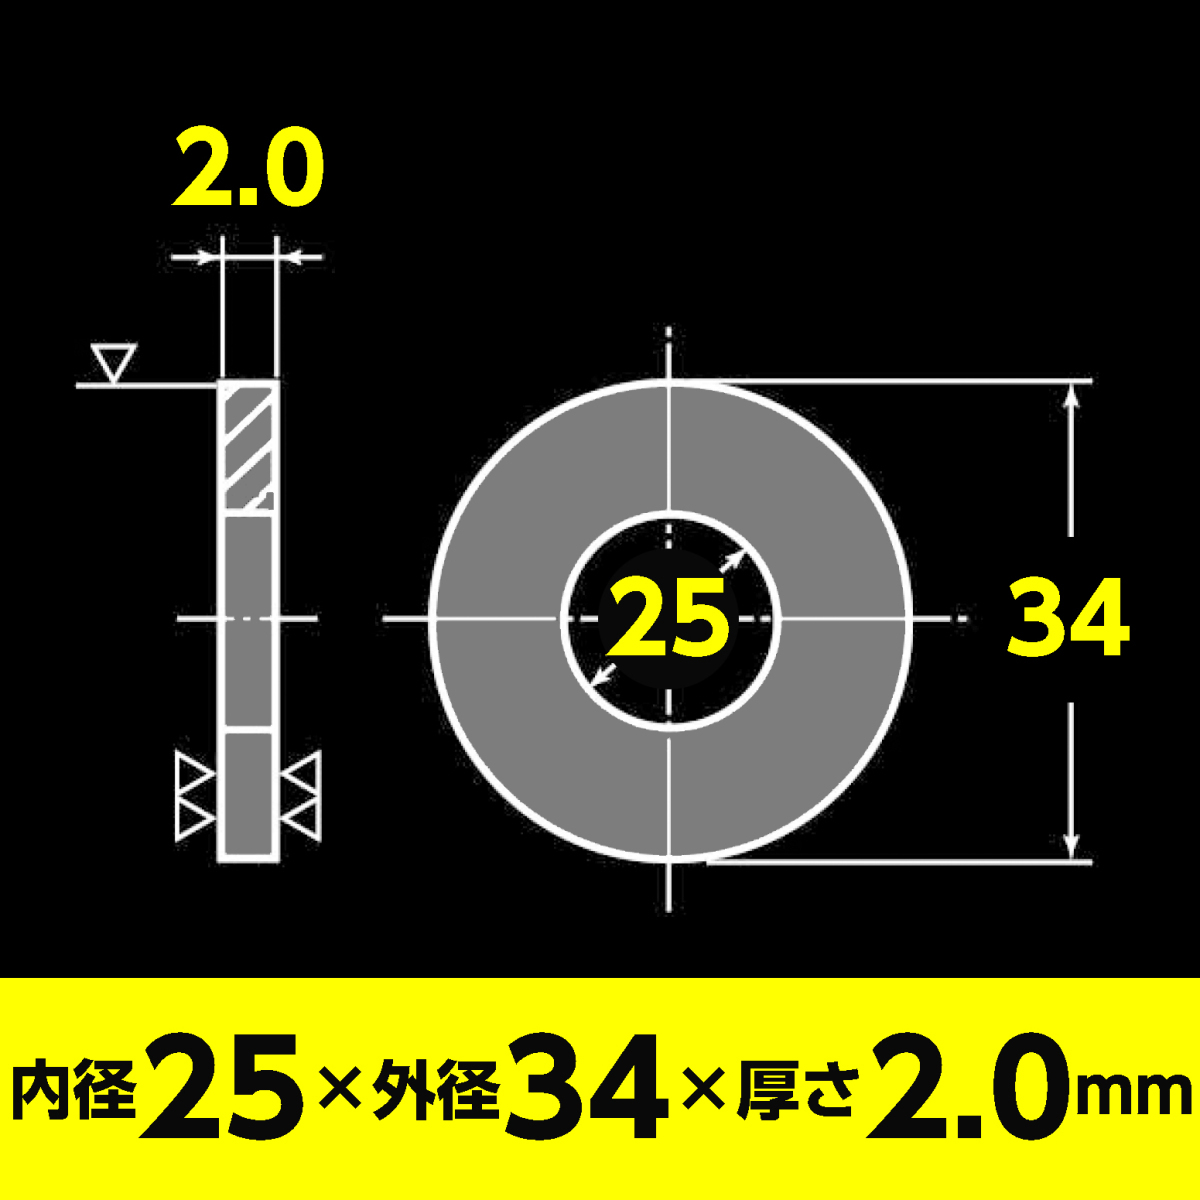 ステンレス 平ワッシャー M24用 内径25.0mm x 外径34mm x 厚さ2.0mm 4個入 丸座金_画像5